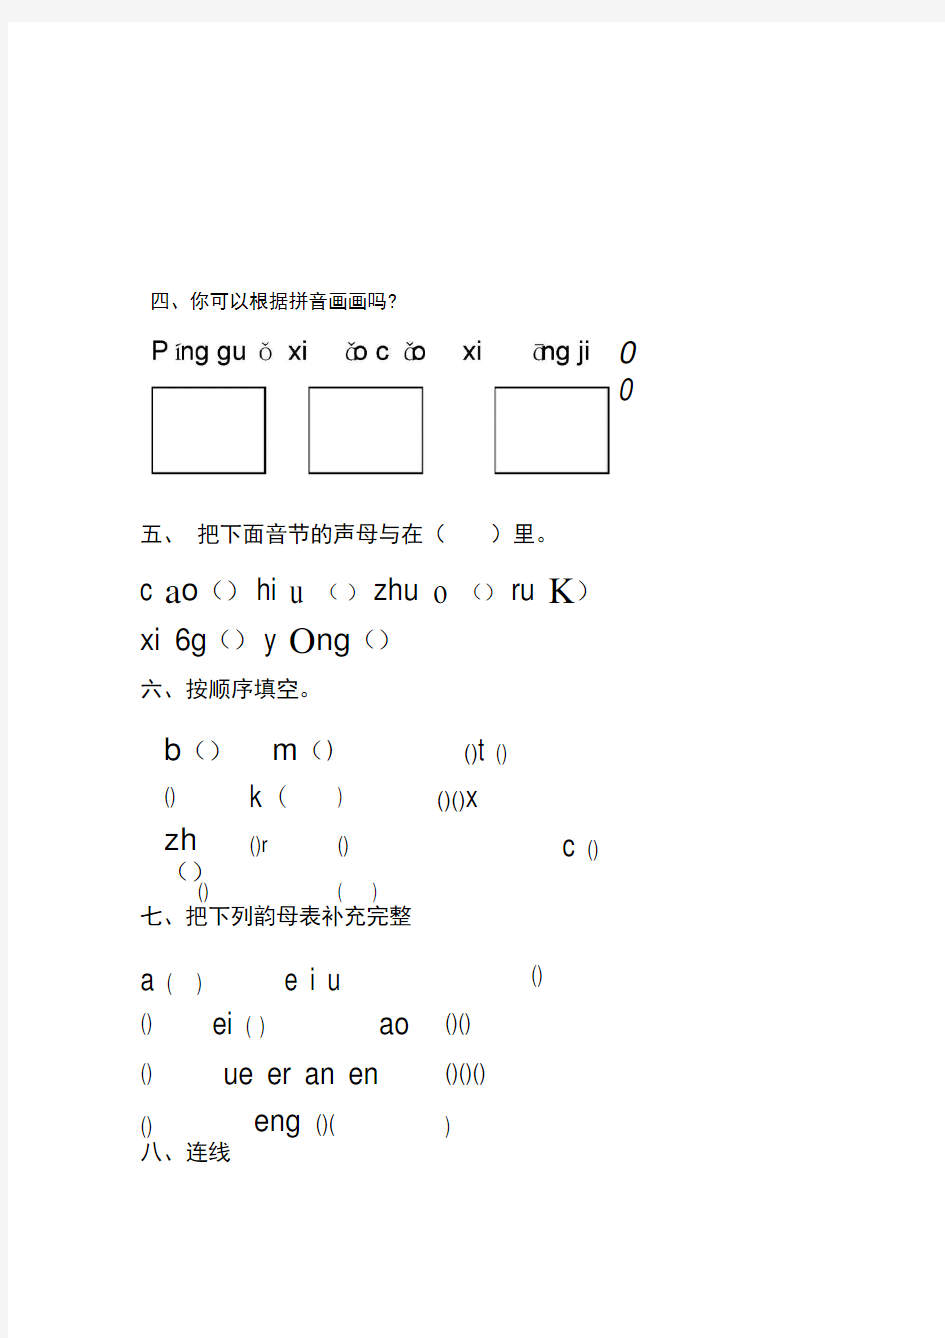 完整小学一年级汉语拼音基础练习题合集